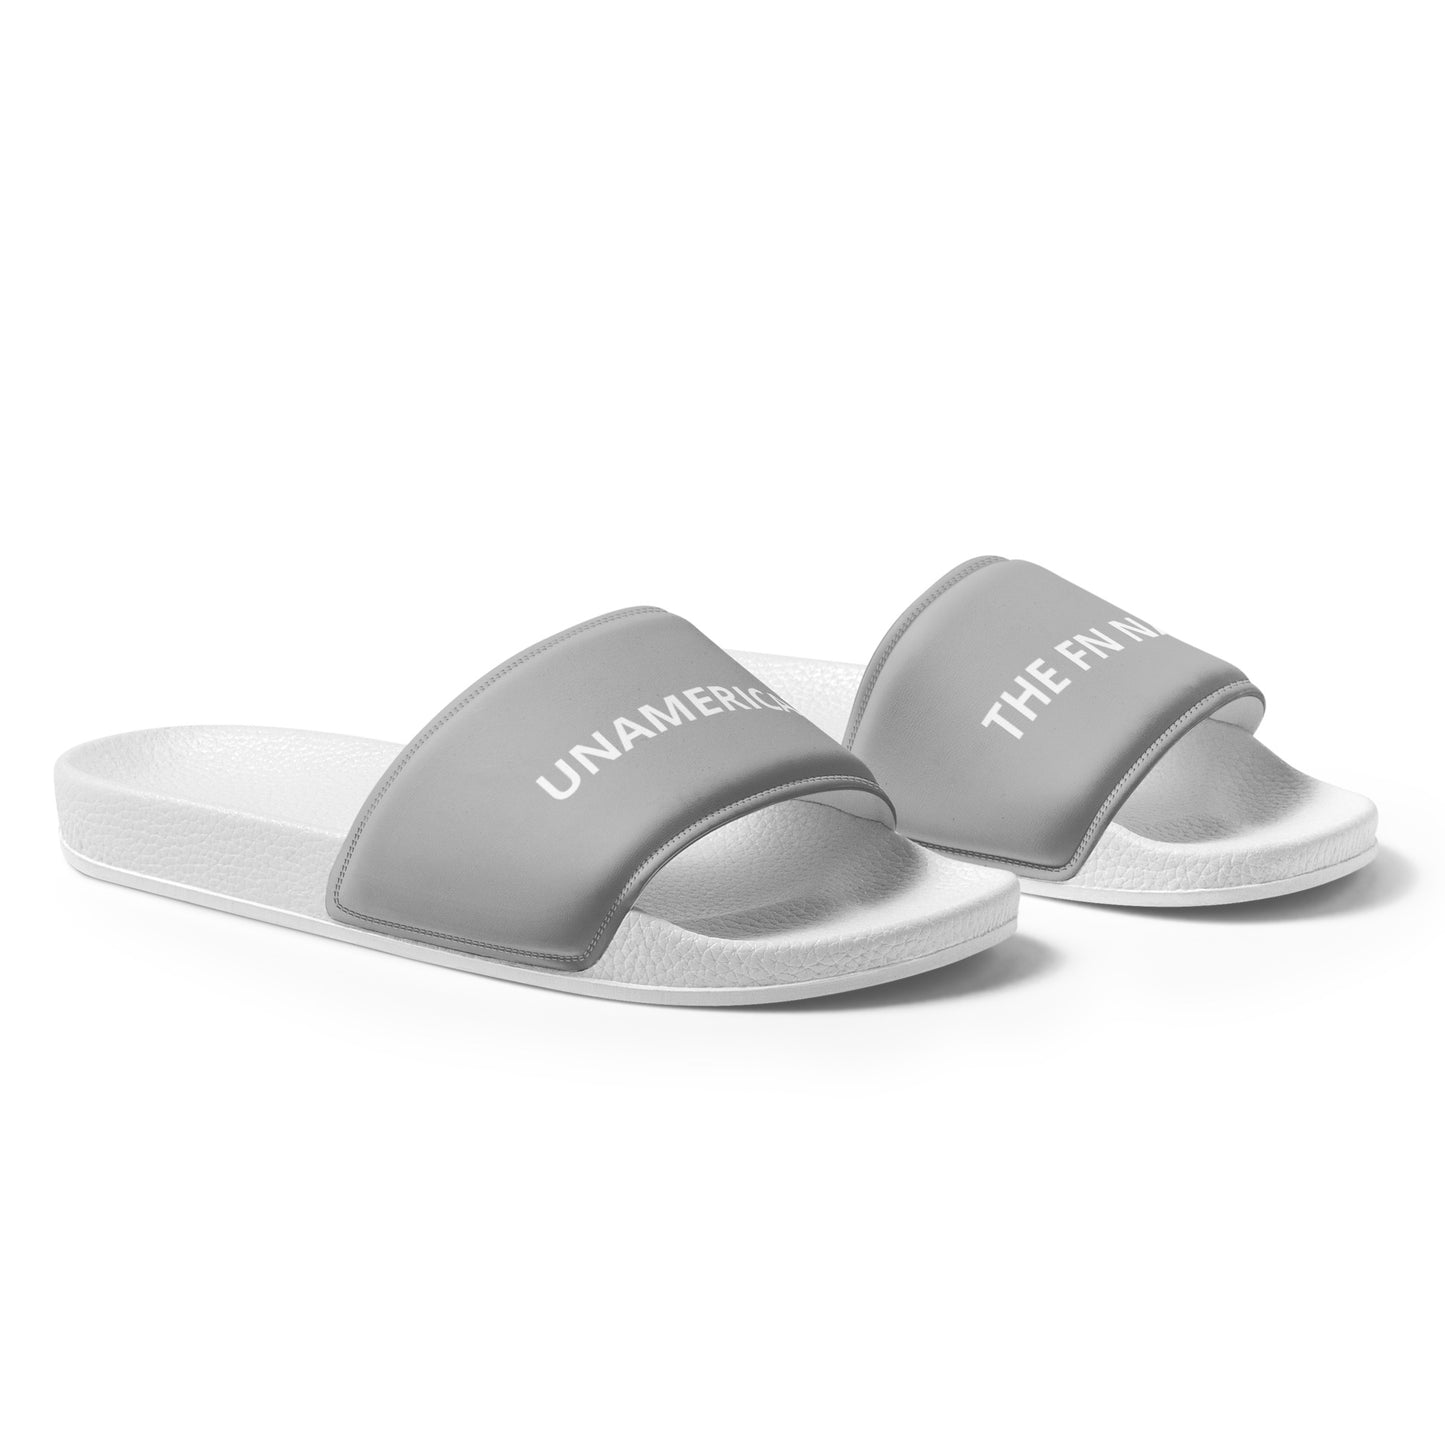 FN UNAMERICAN MEN'S: LAX Slides (white/silver)